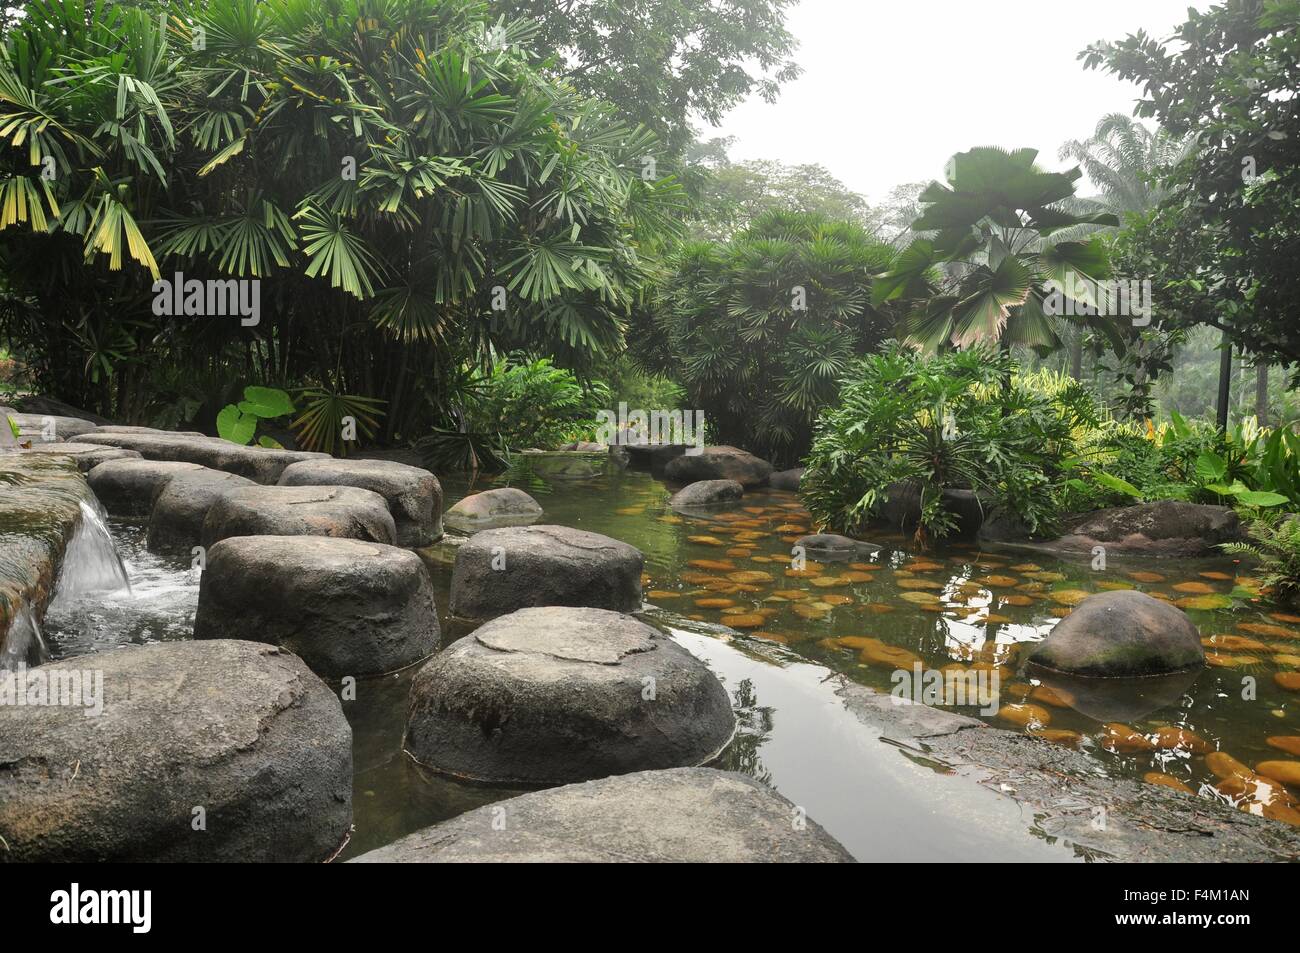 tropical jungle in kuala lumpur malaysia Stock Photo